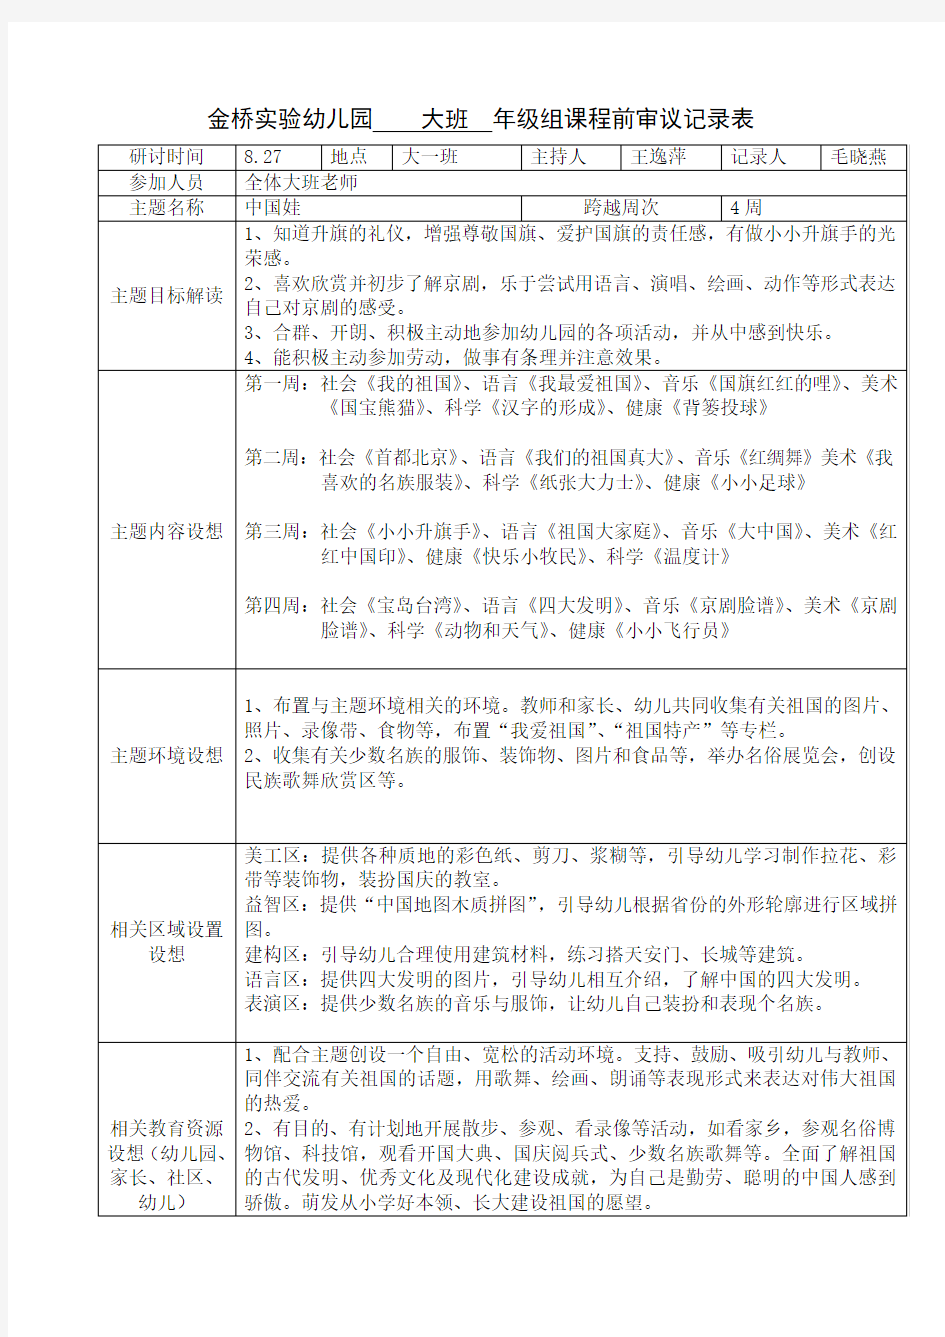 第二主题“中国娃”课程审议记录表